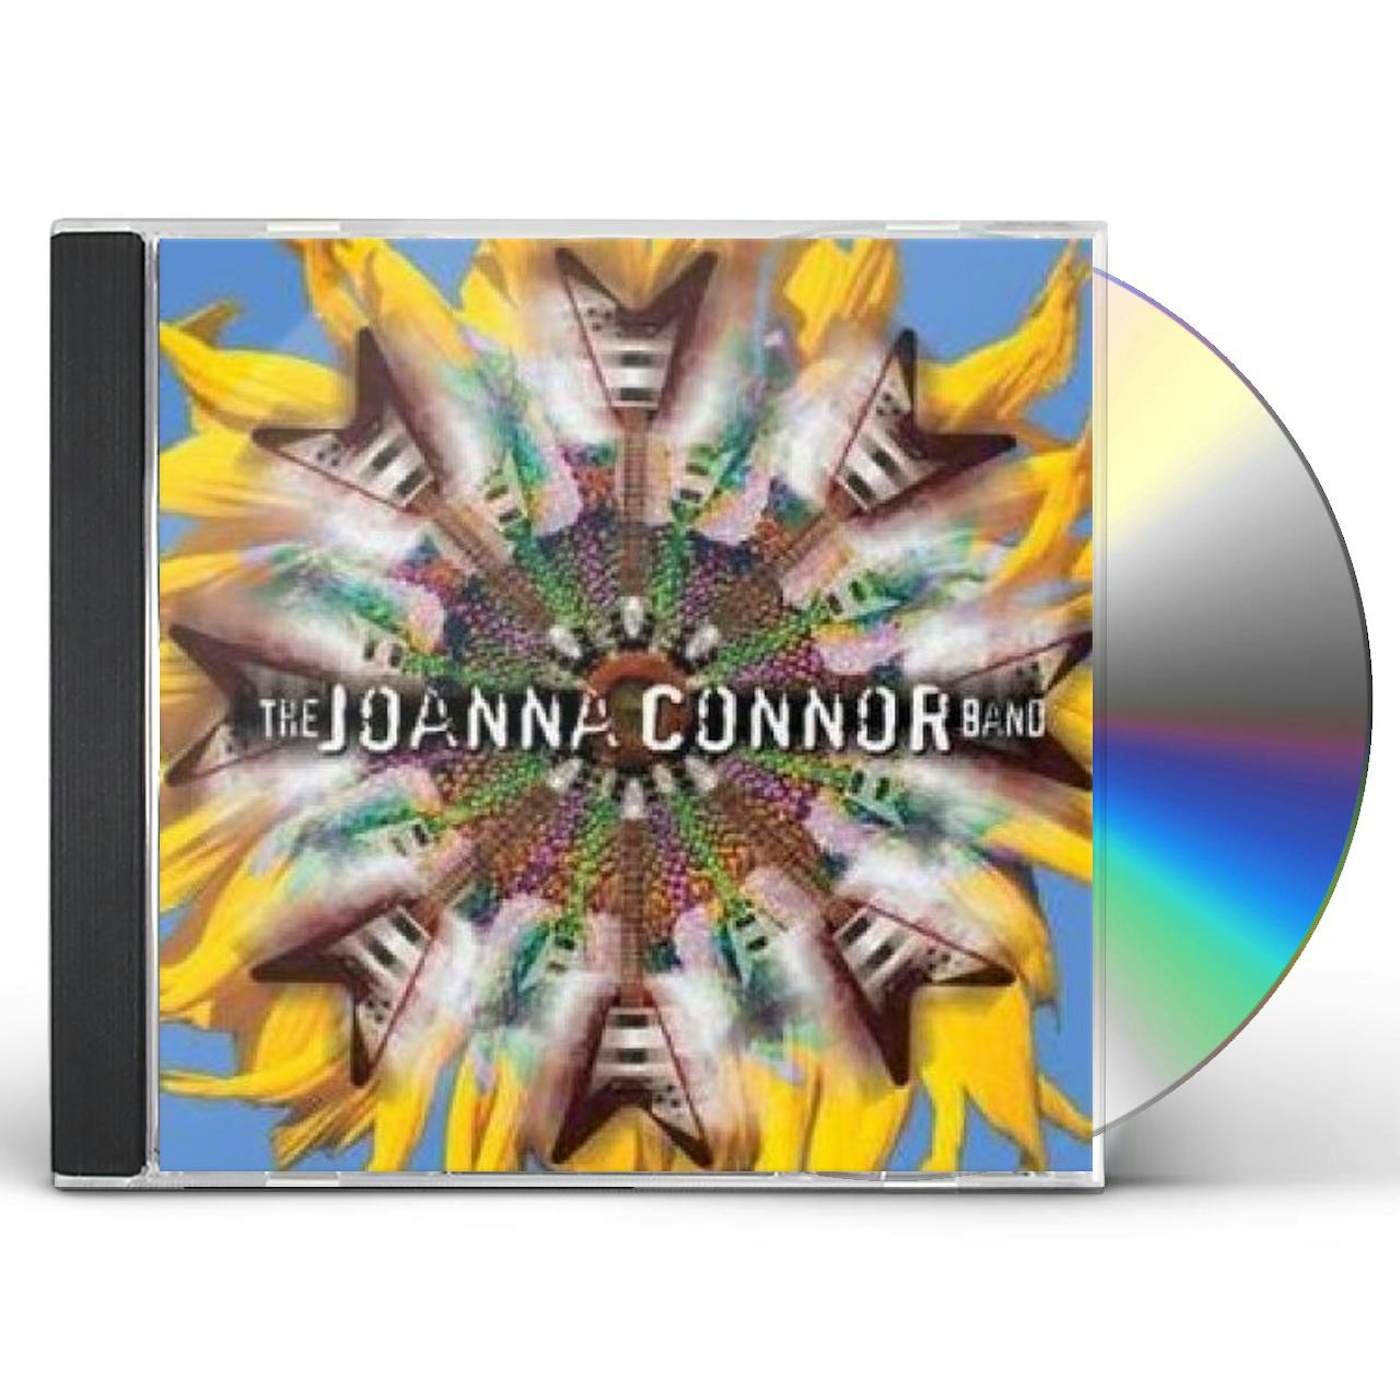 JOANNA CONNOR BAND CD